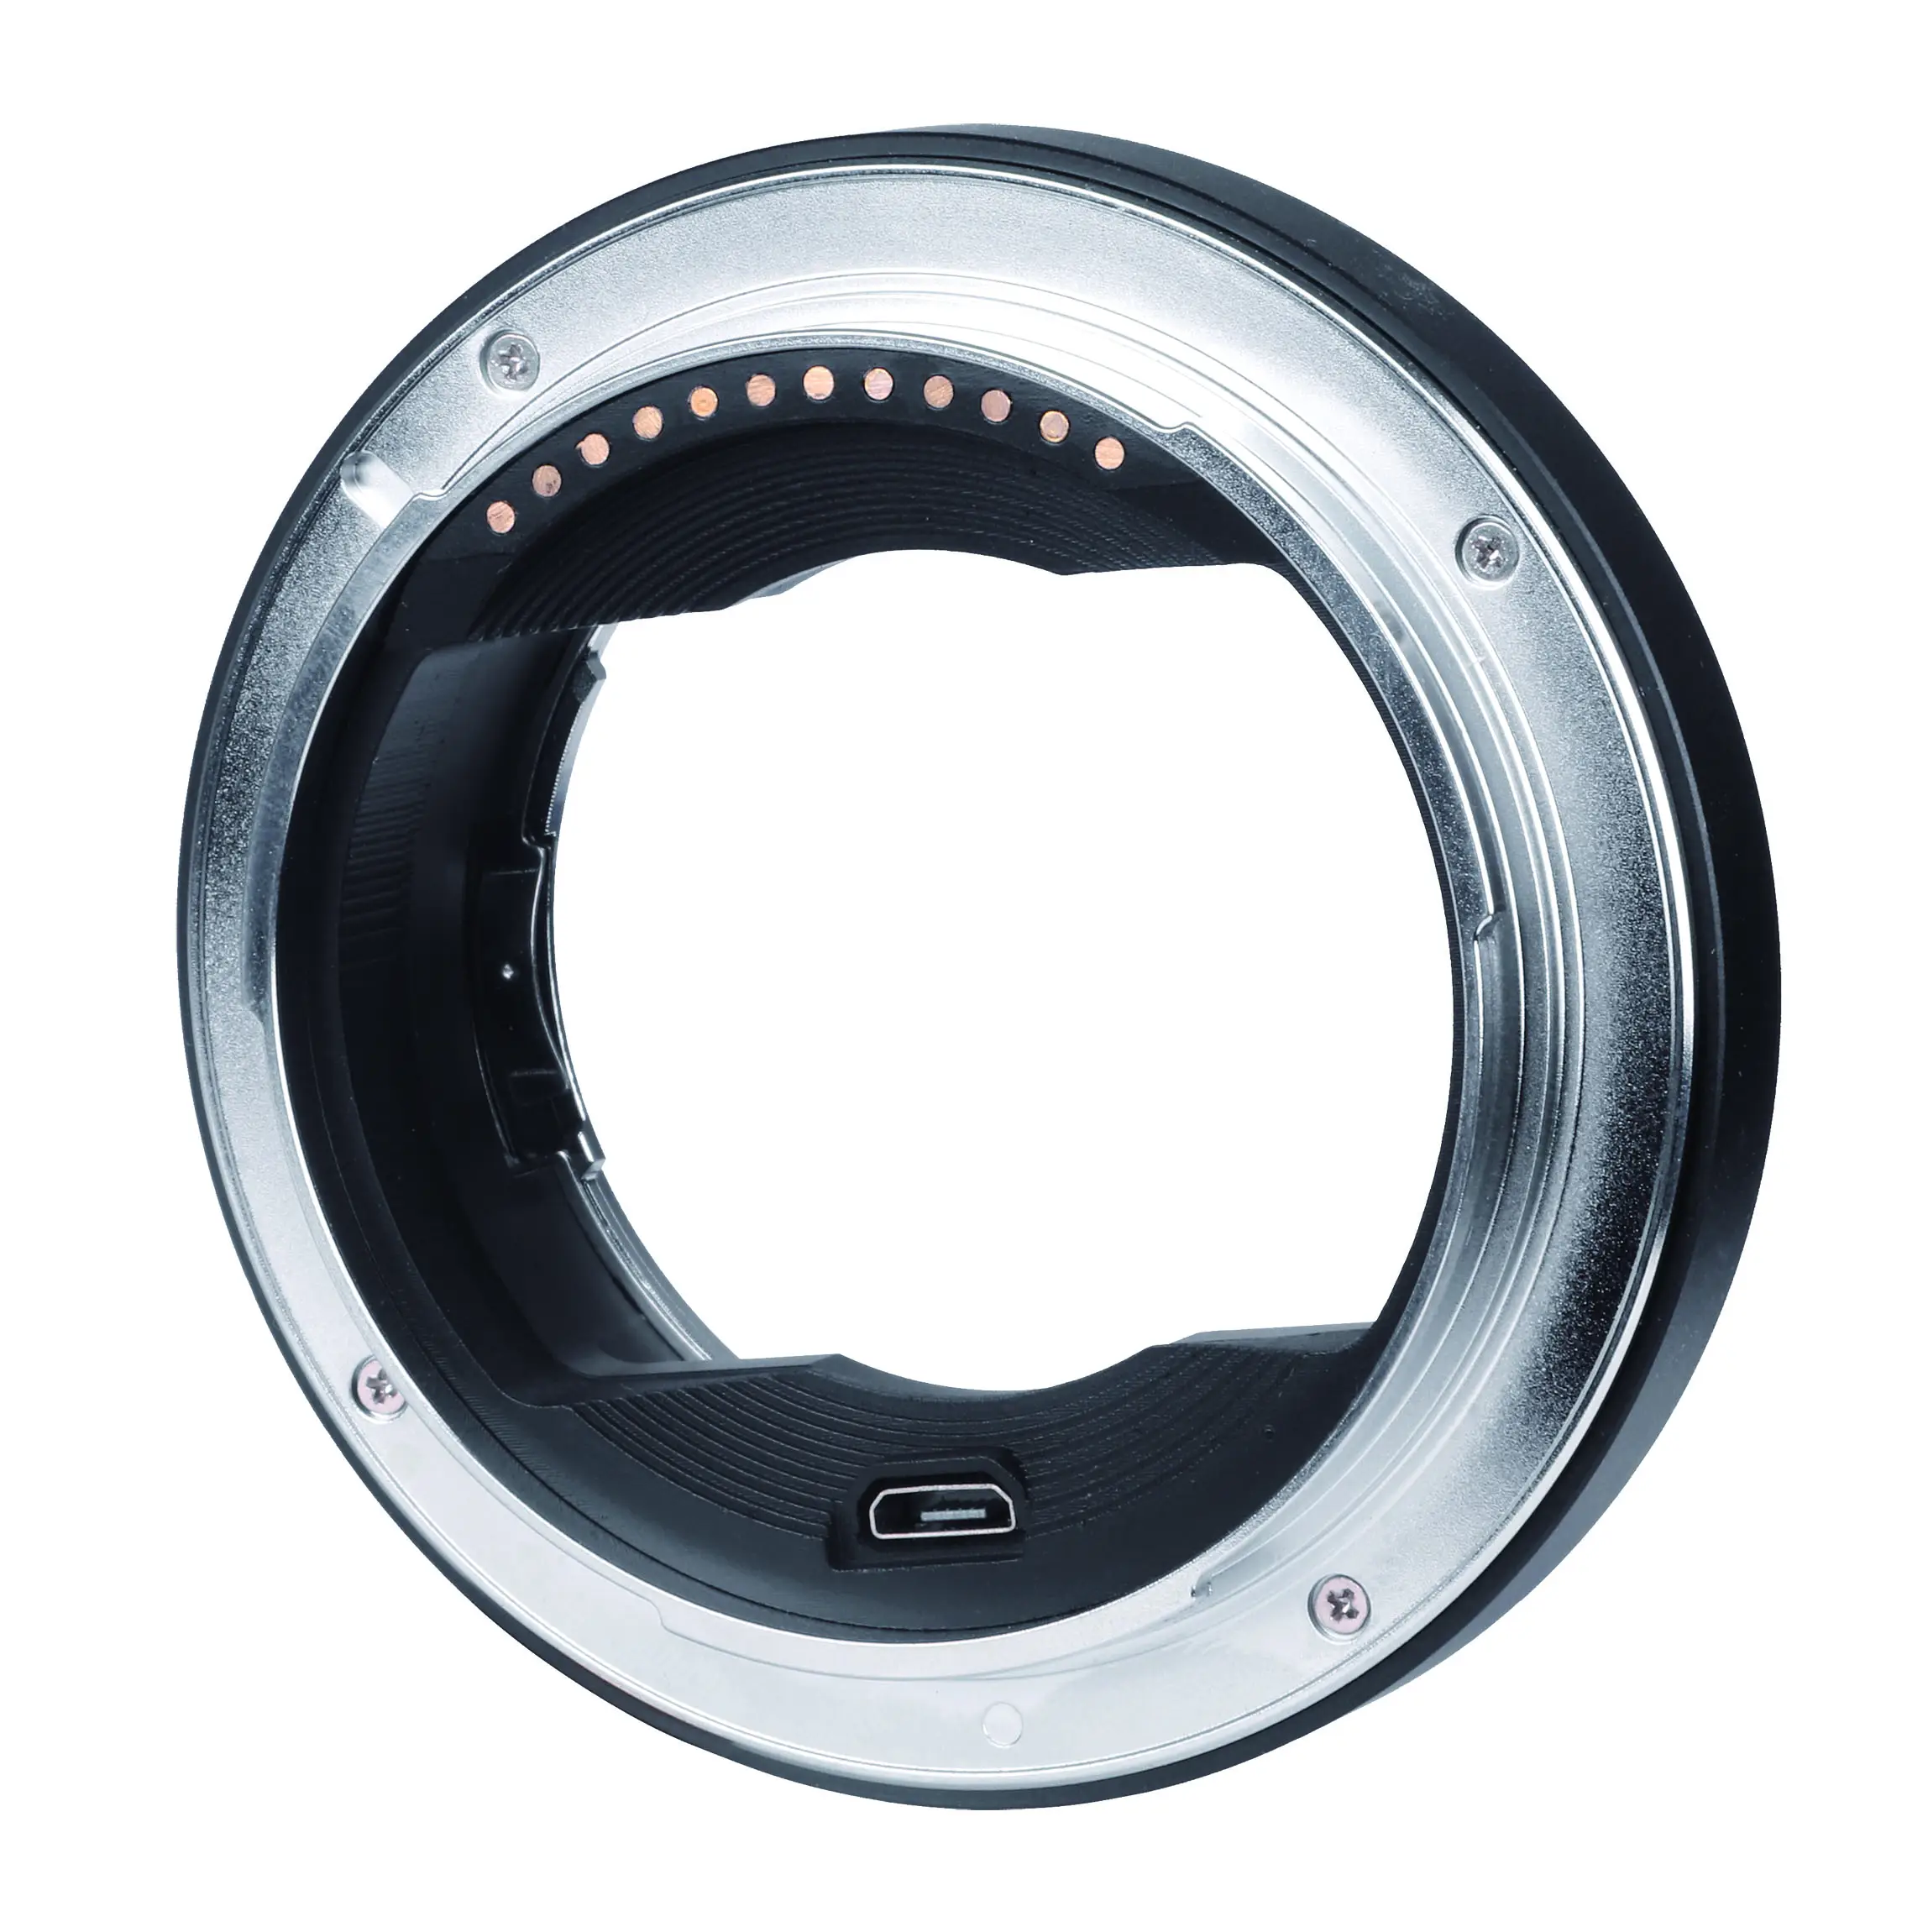 VILTROX EF-GFX लेंस माउंट एडाप्टर अंगूठी के लिए कैनन एफई फ़ूजी GFX-कैमरों माउंट के लिए ऑटो फोकस करने के लिए लेंस